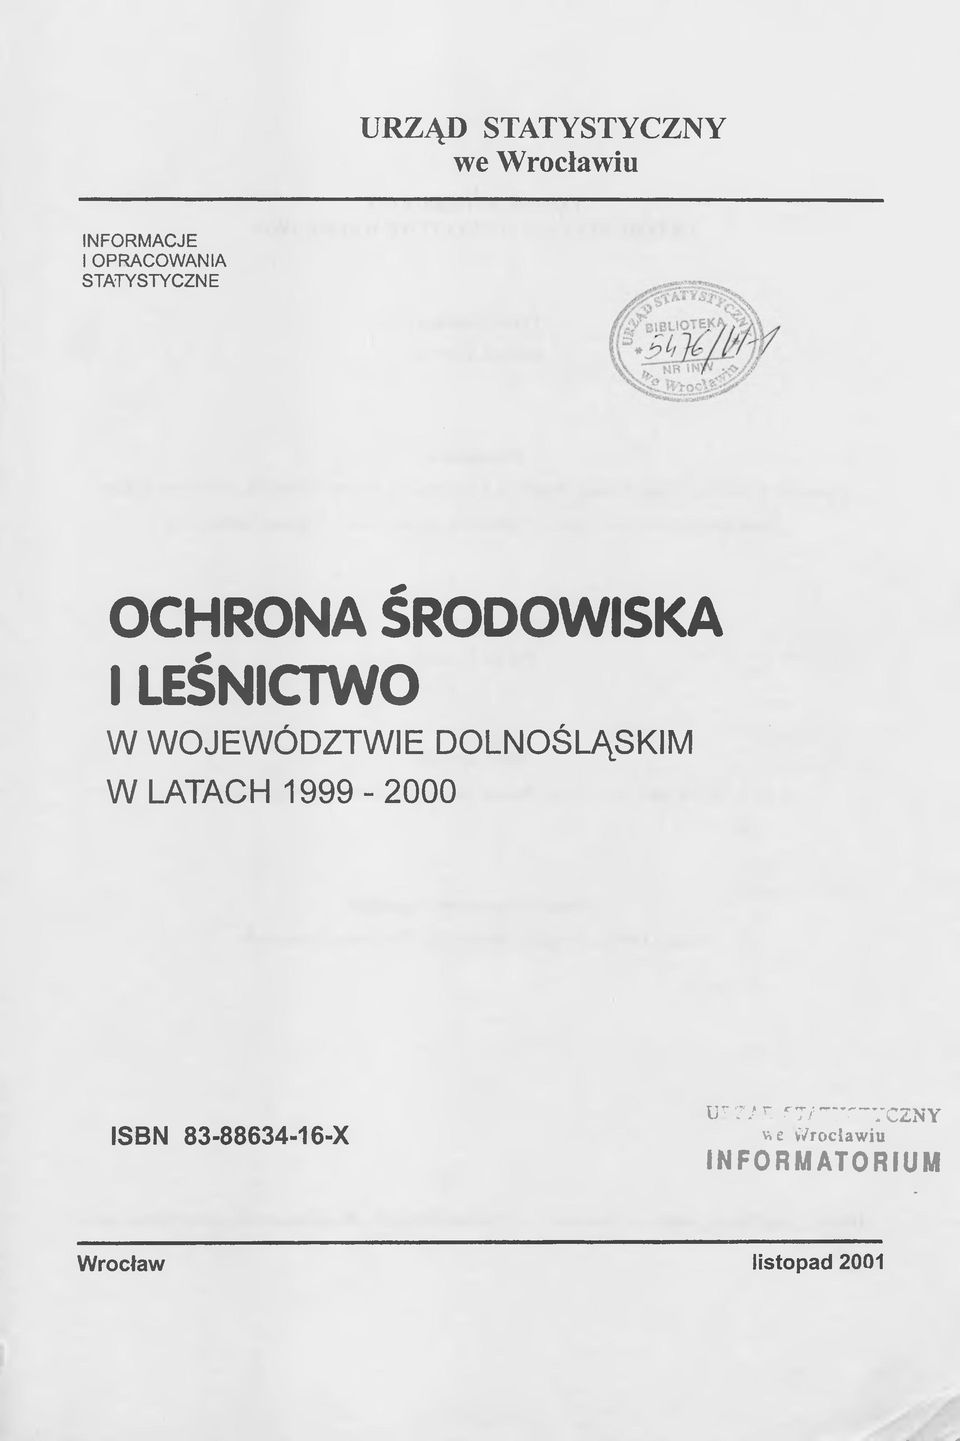 DOLNOŚLĄSKIM W LATACH 1999-2000 ISBN 83-88634-16-X IF7/ r